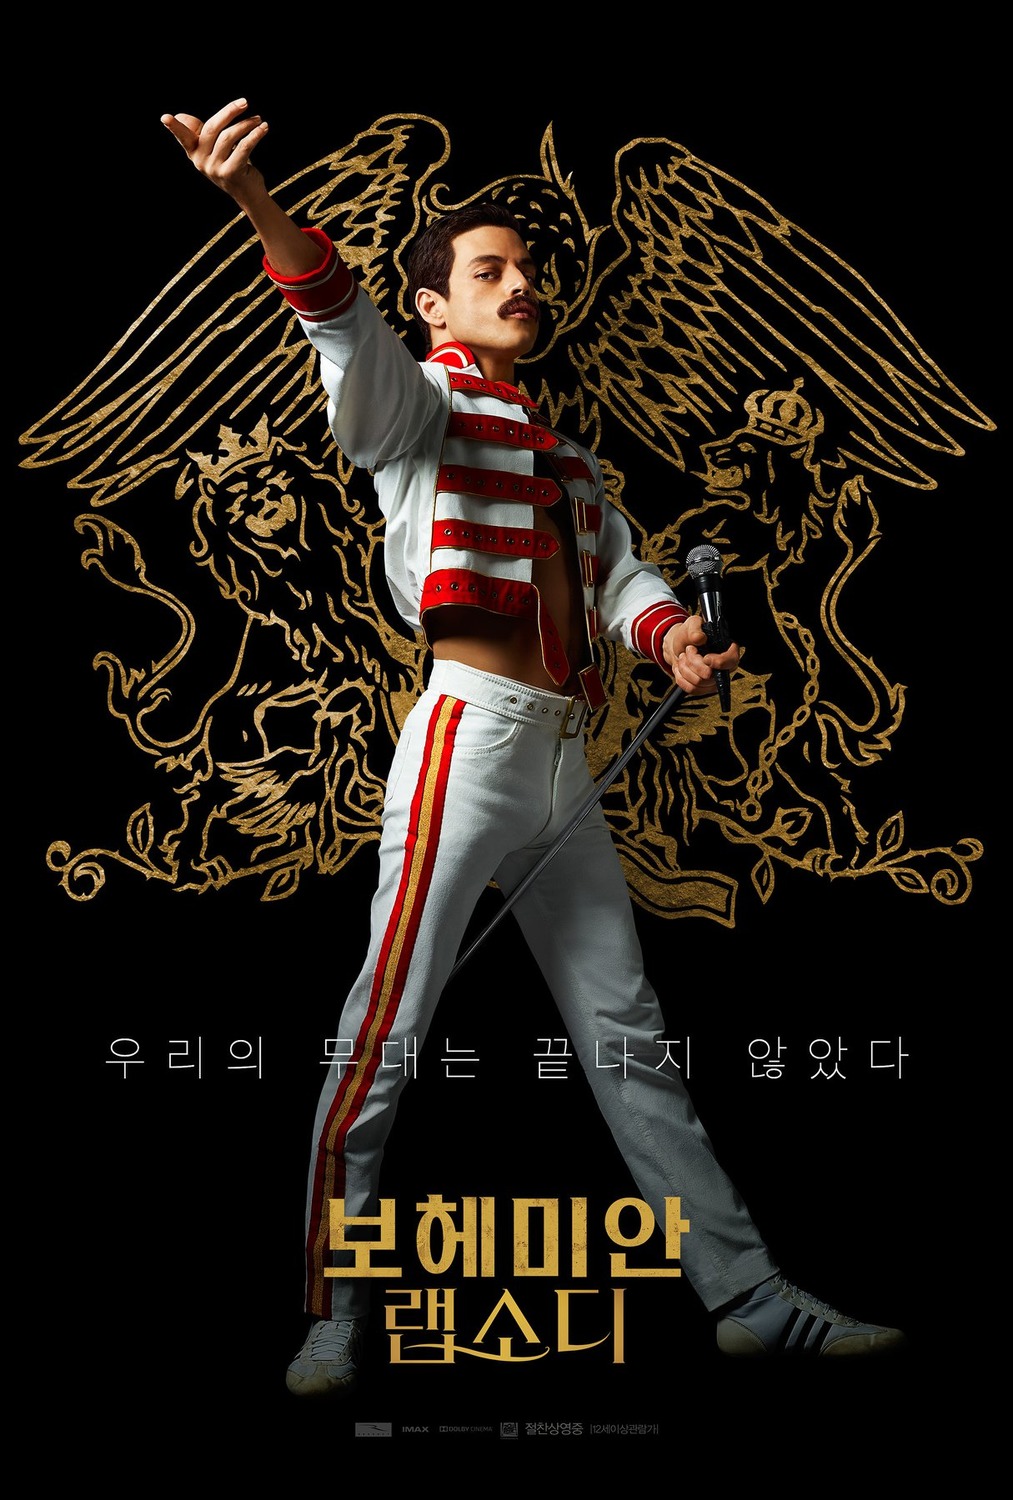 Slagter sorg forurening Bohemian Rhapsody Movie Poster (#12 of 12) - IMP Awards